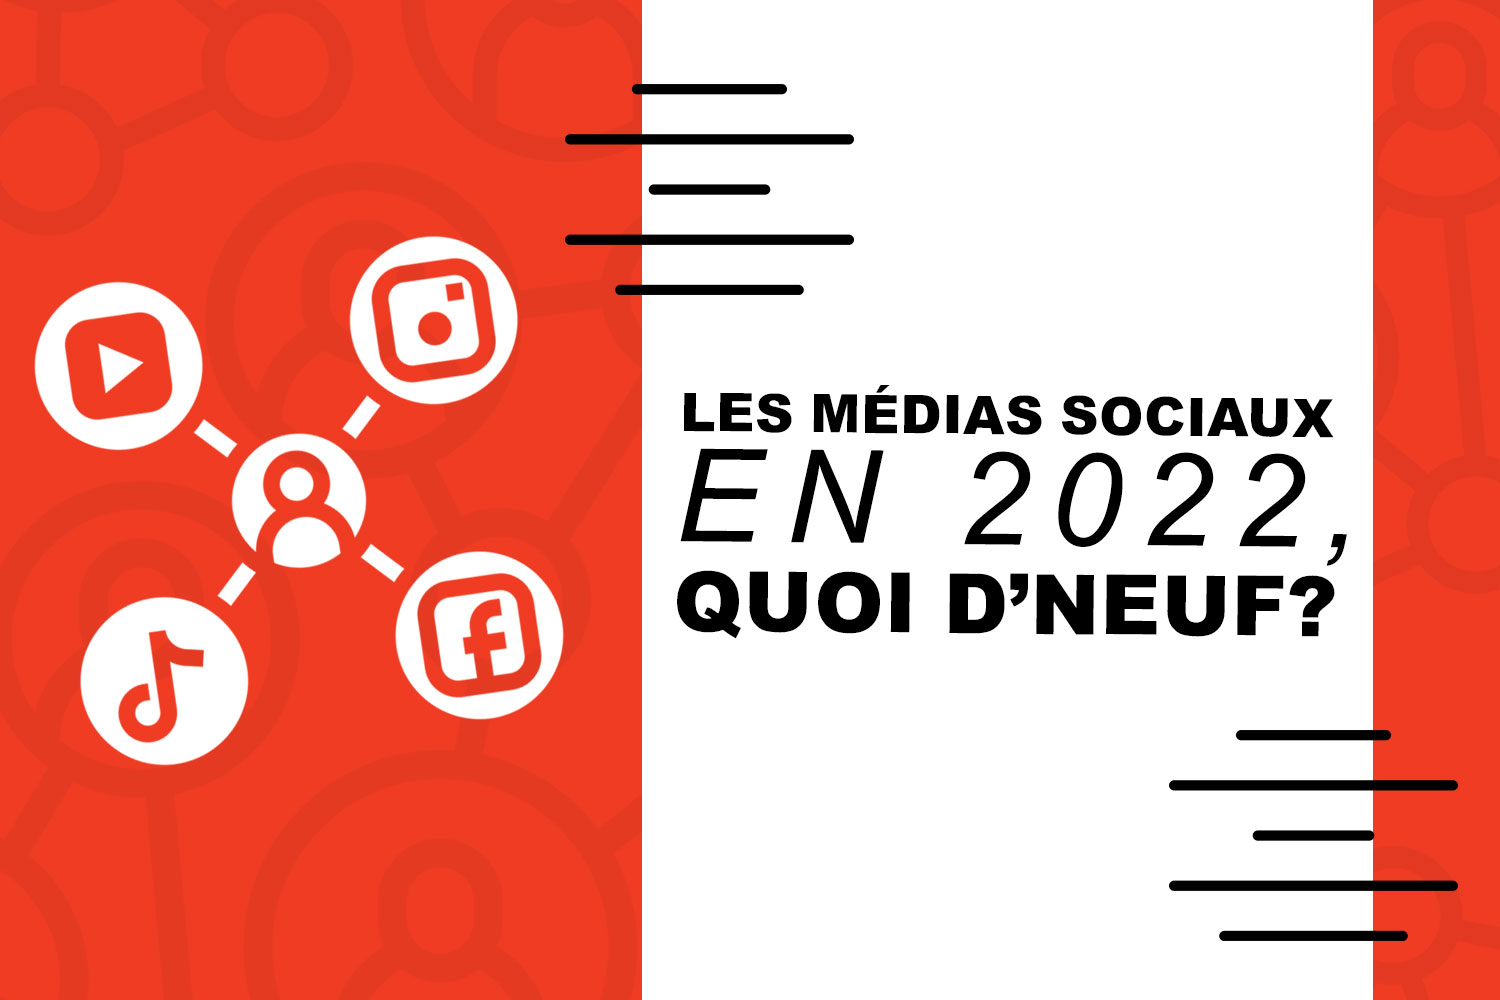 Les médias sociaux en 2022, quoi d'neuf ?